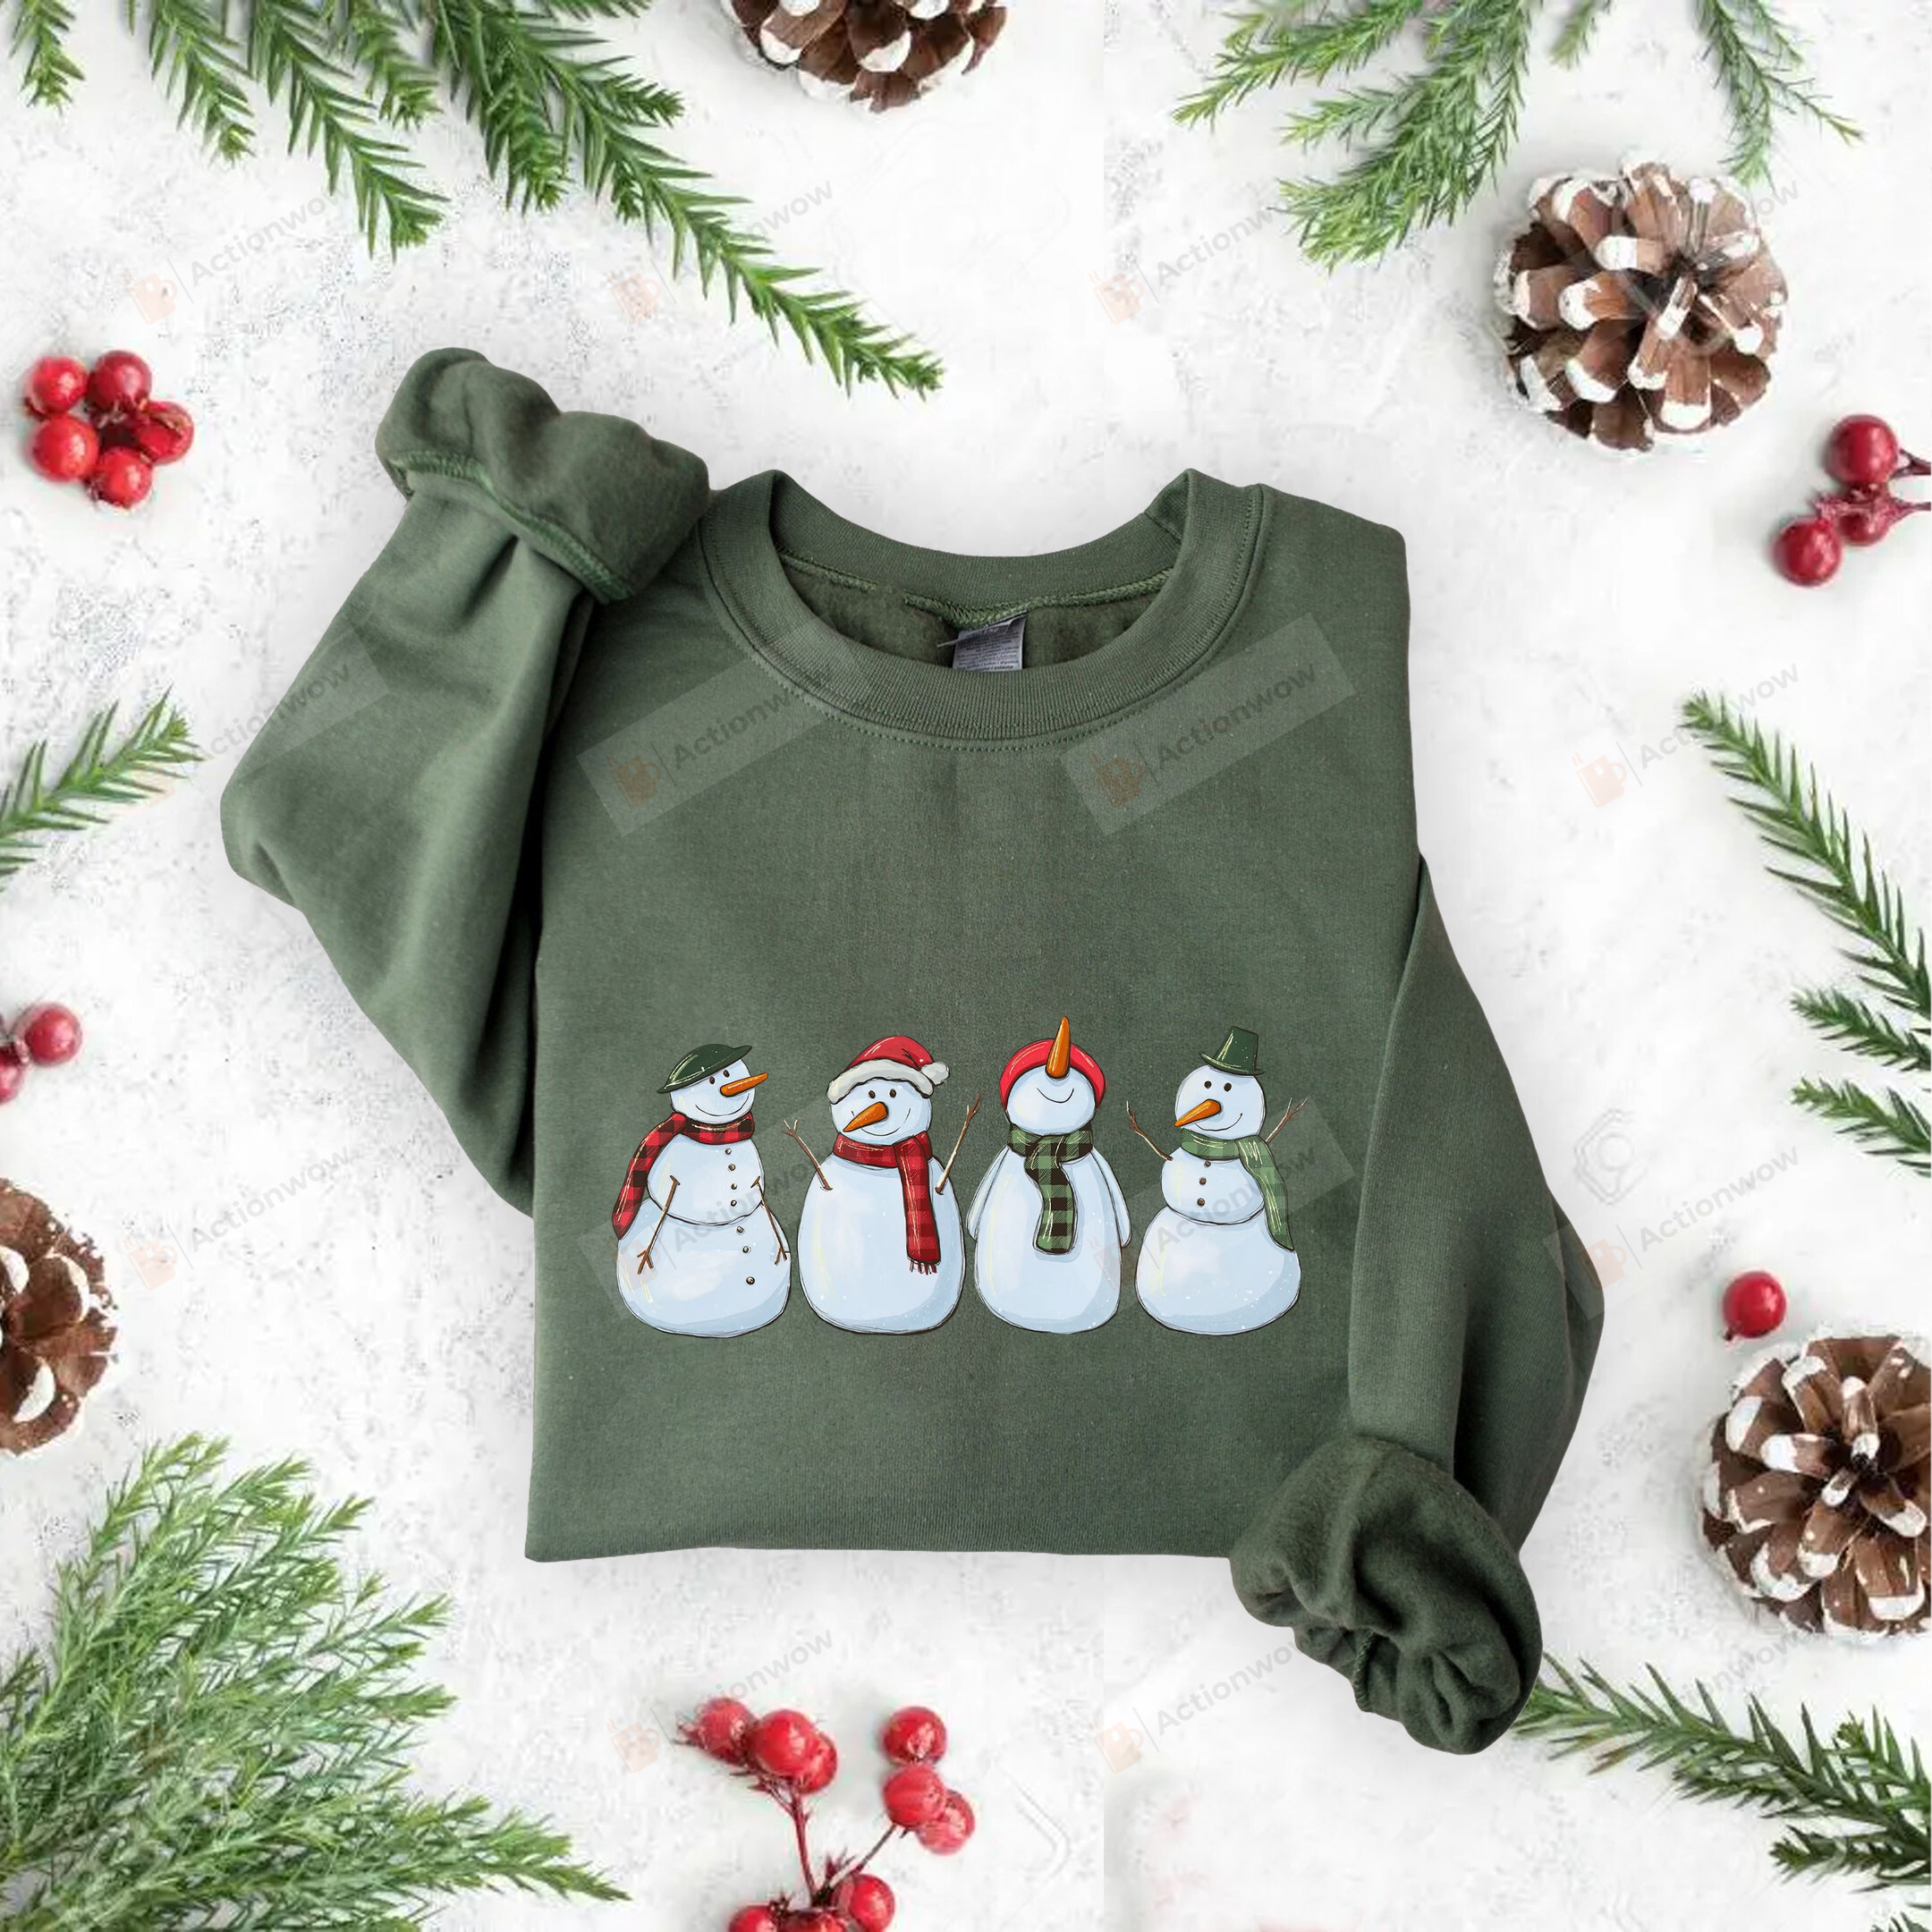 Snowman Sweatshirt, Christmas Sweatshirt, Snowman Shirt, Christmas Crewneck, Christmas Sweater